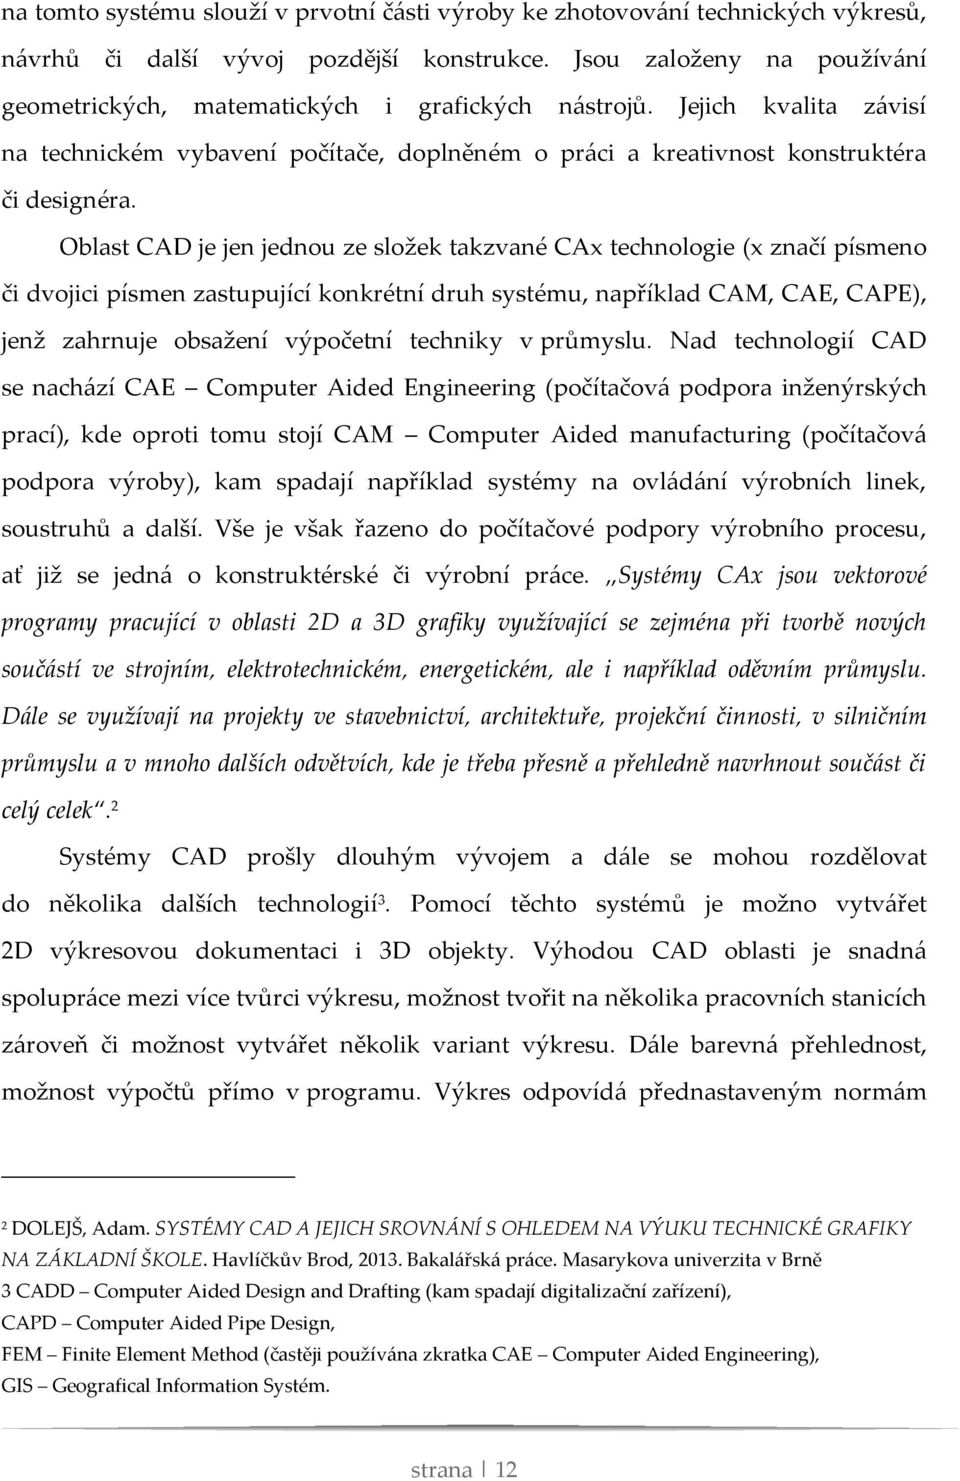 Oblast CAD je jen jednou ze složek takzvané CAx technologie (x značí písmeno či dvojici písmen zastupující konkrétní druh systému, například CAM, CAE, CAPE), jenž zahrnuje obsažení výpočetní techniky